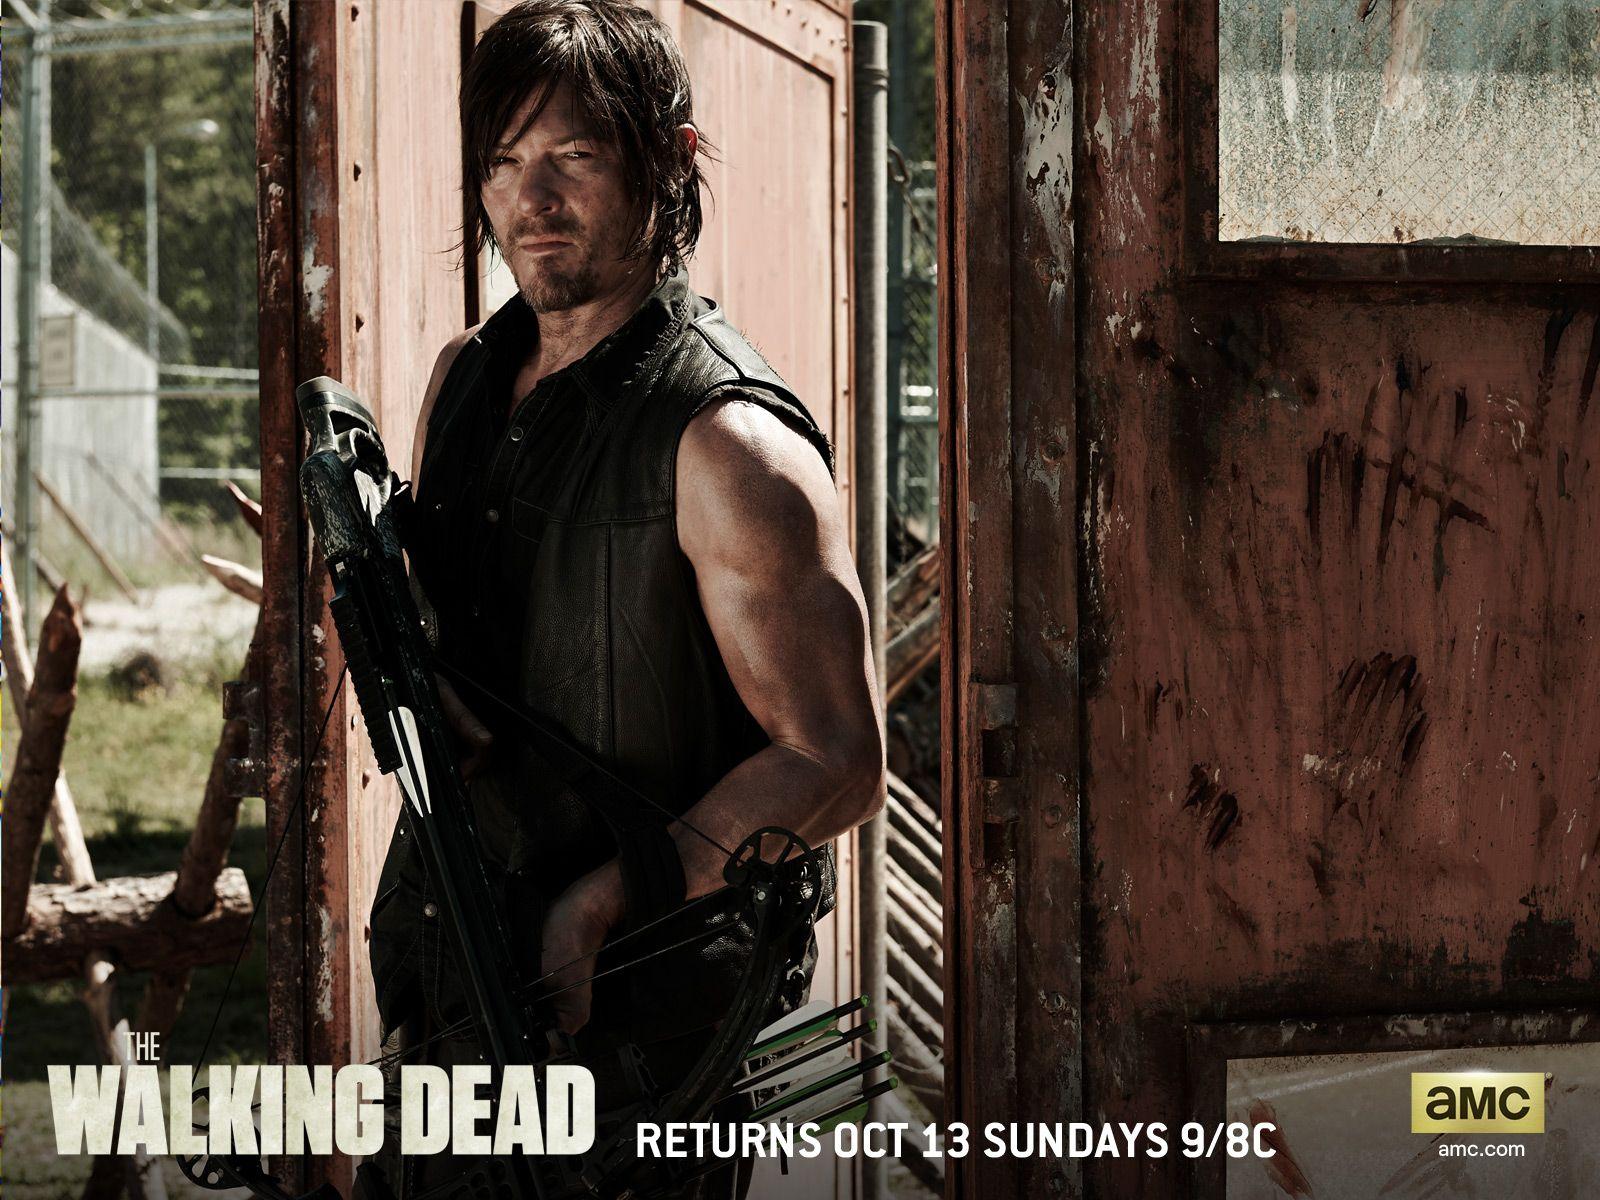 The Walking Dead Season 4: Daryl wallpaper. The Walking Dead